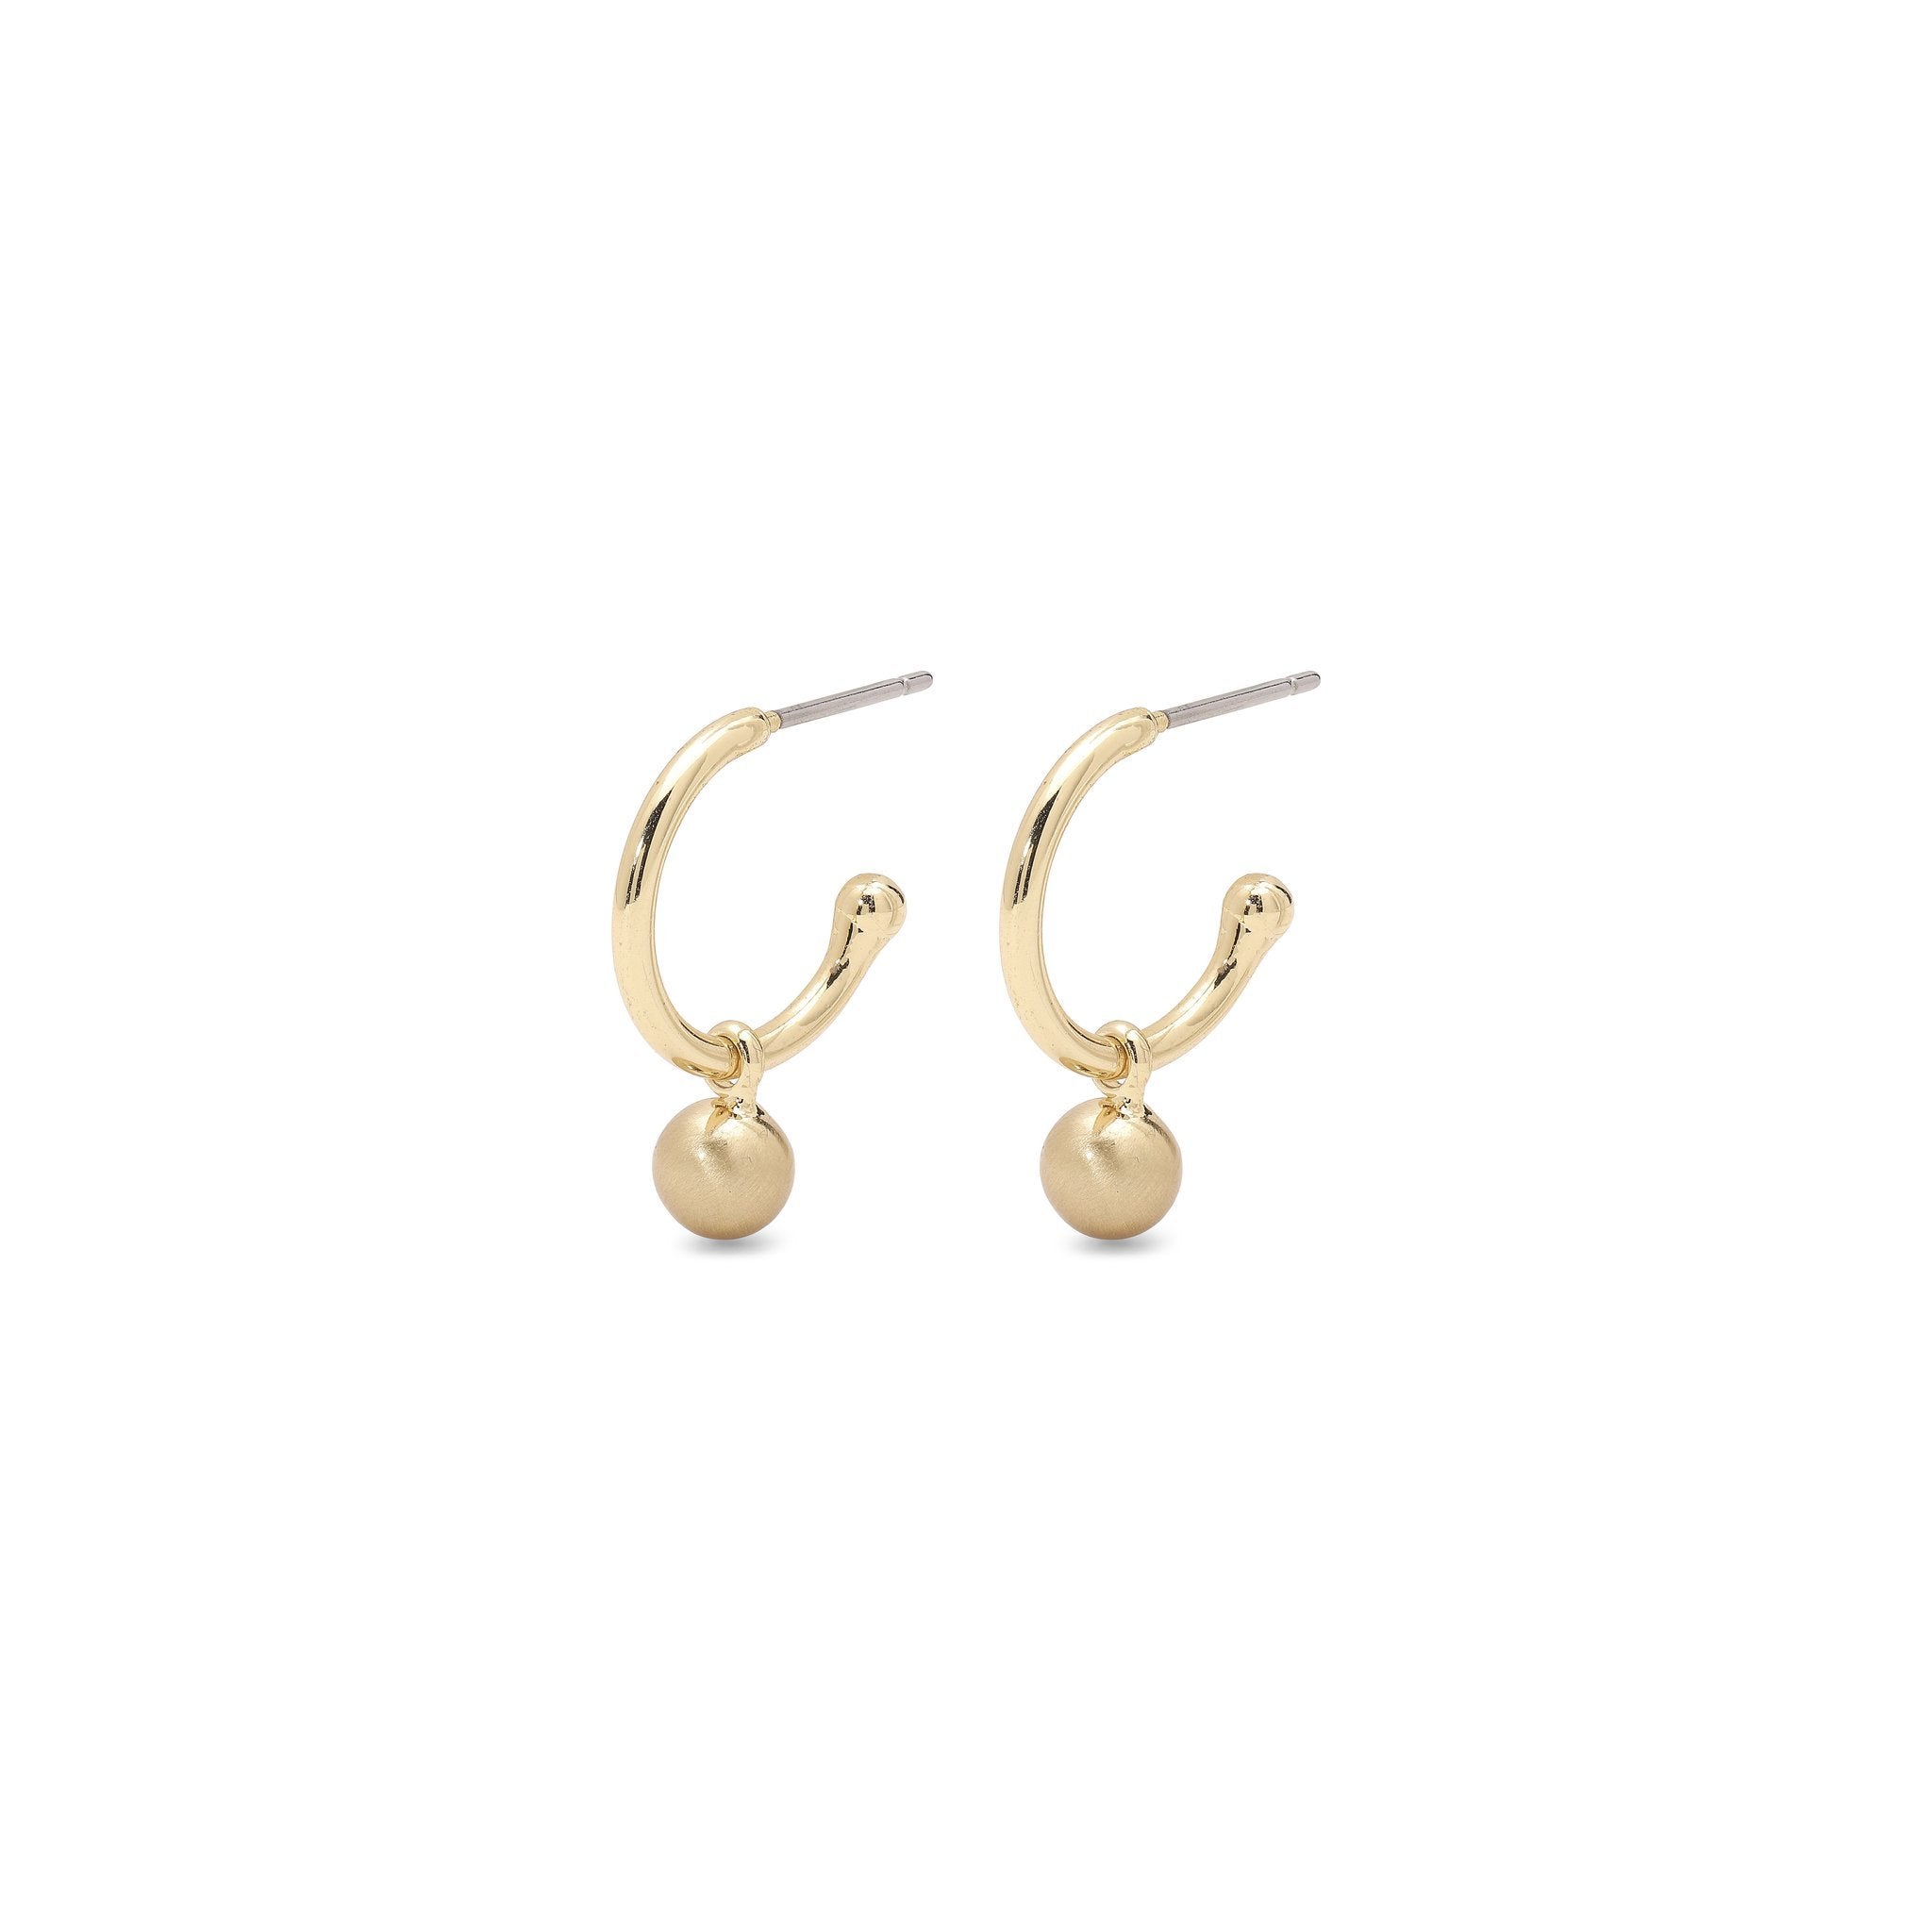 Berta Gold Earrings